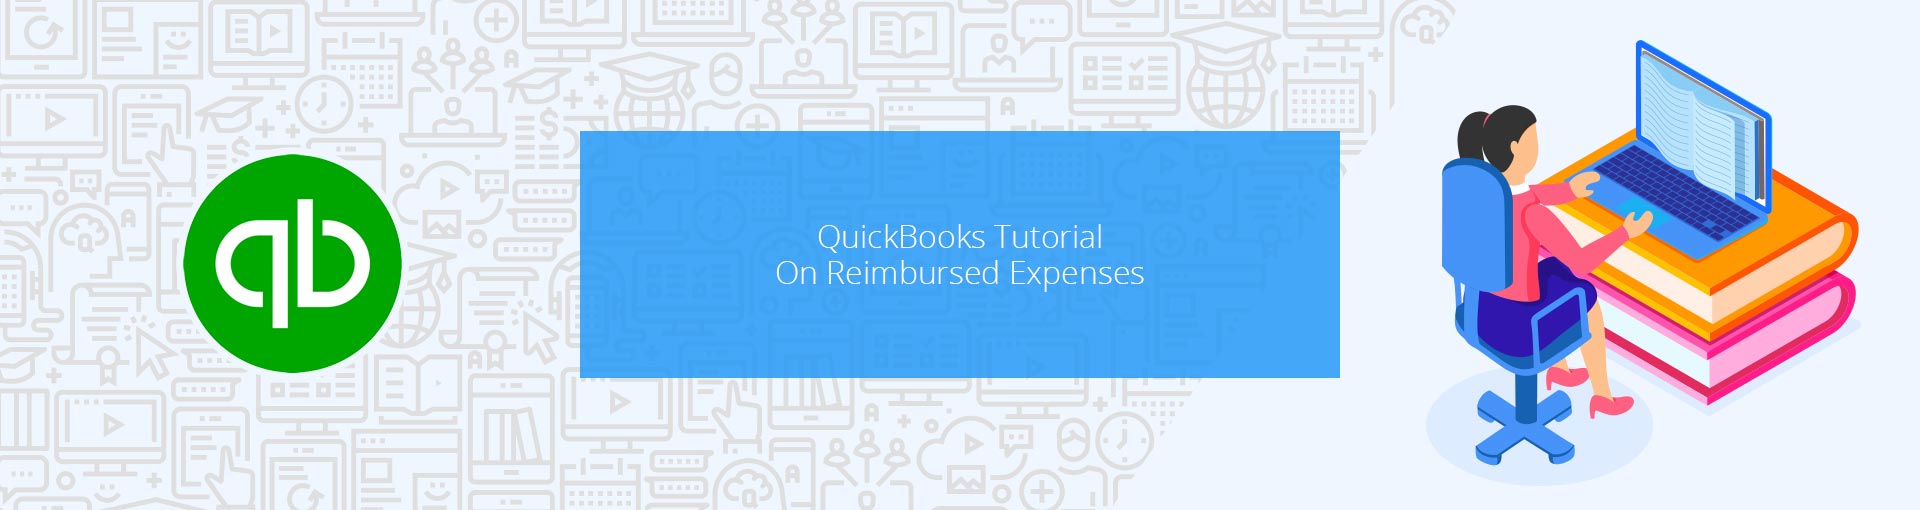 QuickBook Tutorial On Reimbursed Expenses Featured Image